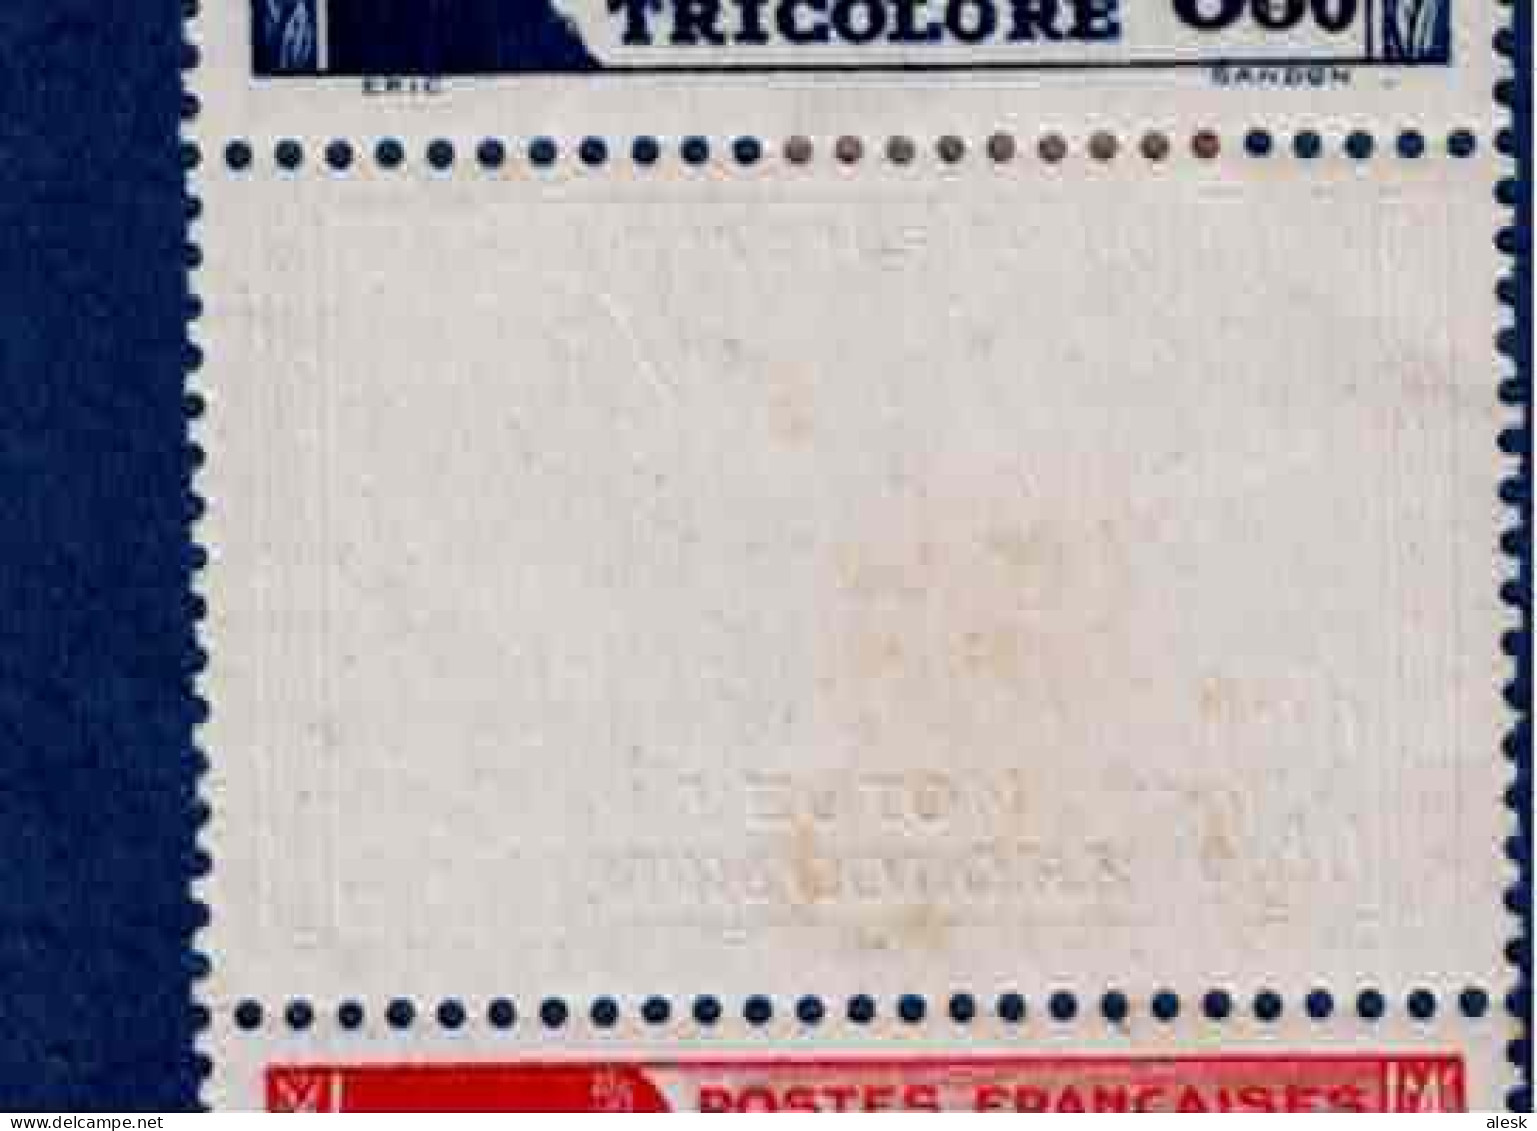 FRANCE N°565 + 566 (y&t) - Bande De 4 - 2+2 Avec Charnière - Pour La Légion Tricolore - 1942 - Nuovi